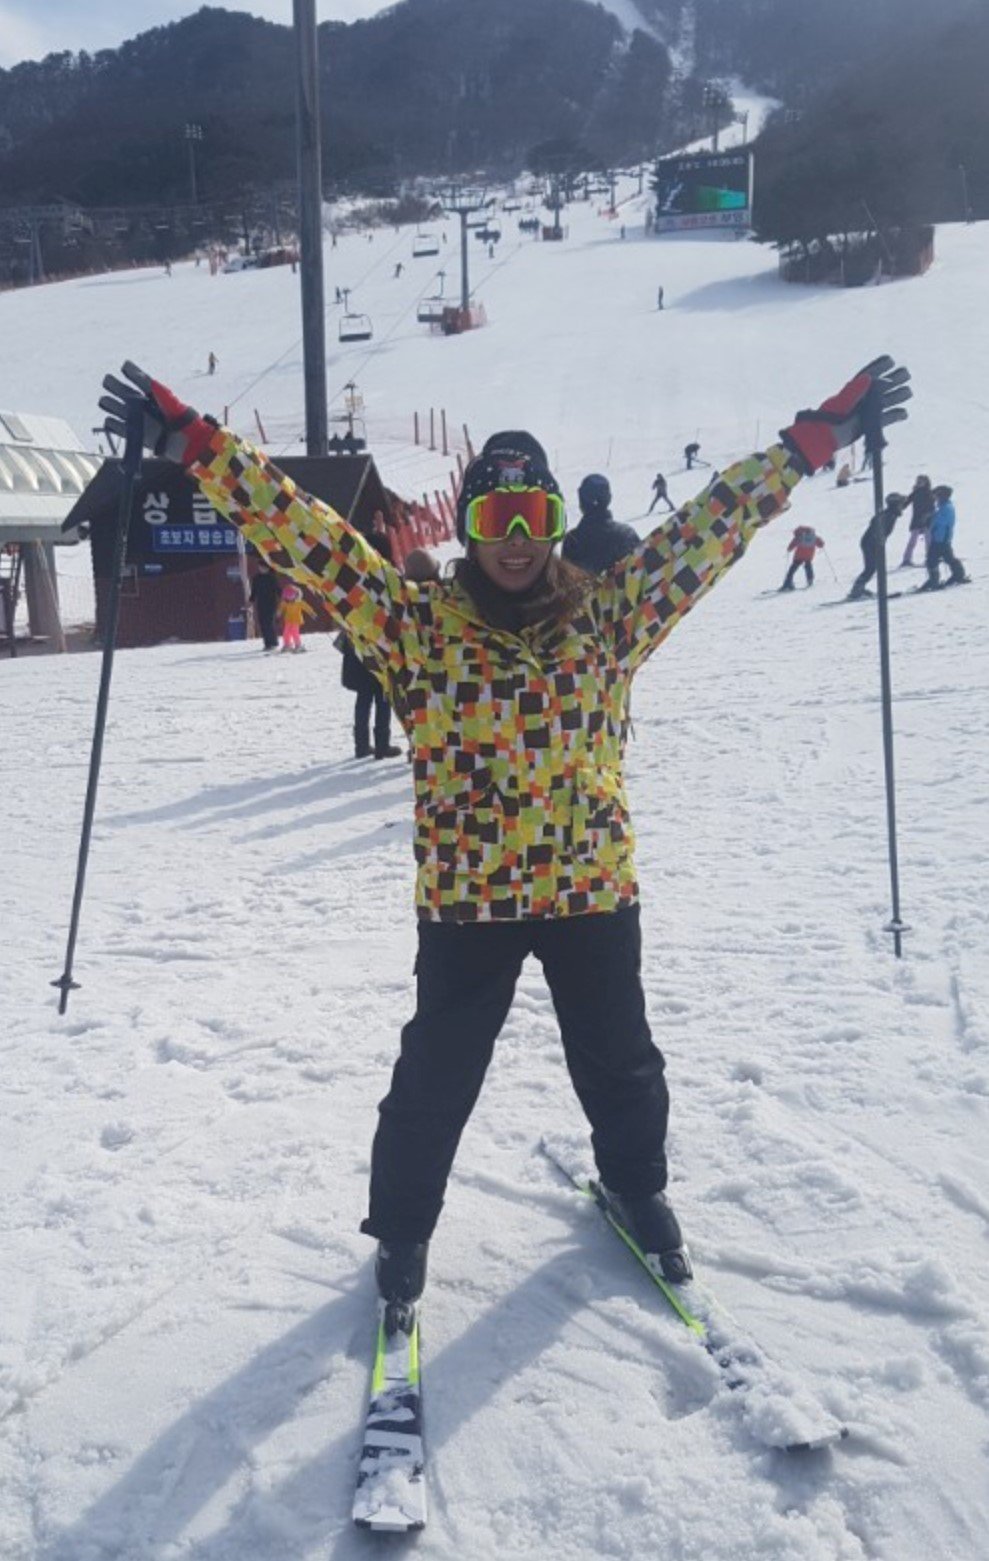 한국에 와서 스키장에서 즐거운 시간을 보내는 박윤희 씨. 북에선 스키를 타는 것이 죽을만큼 고통이었지만, 남에 와선 즐거운 취미가 됐다.